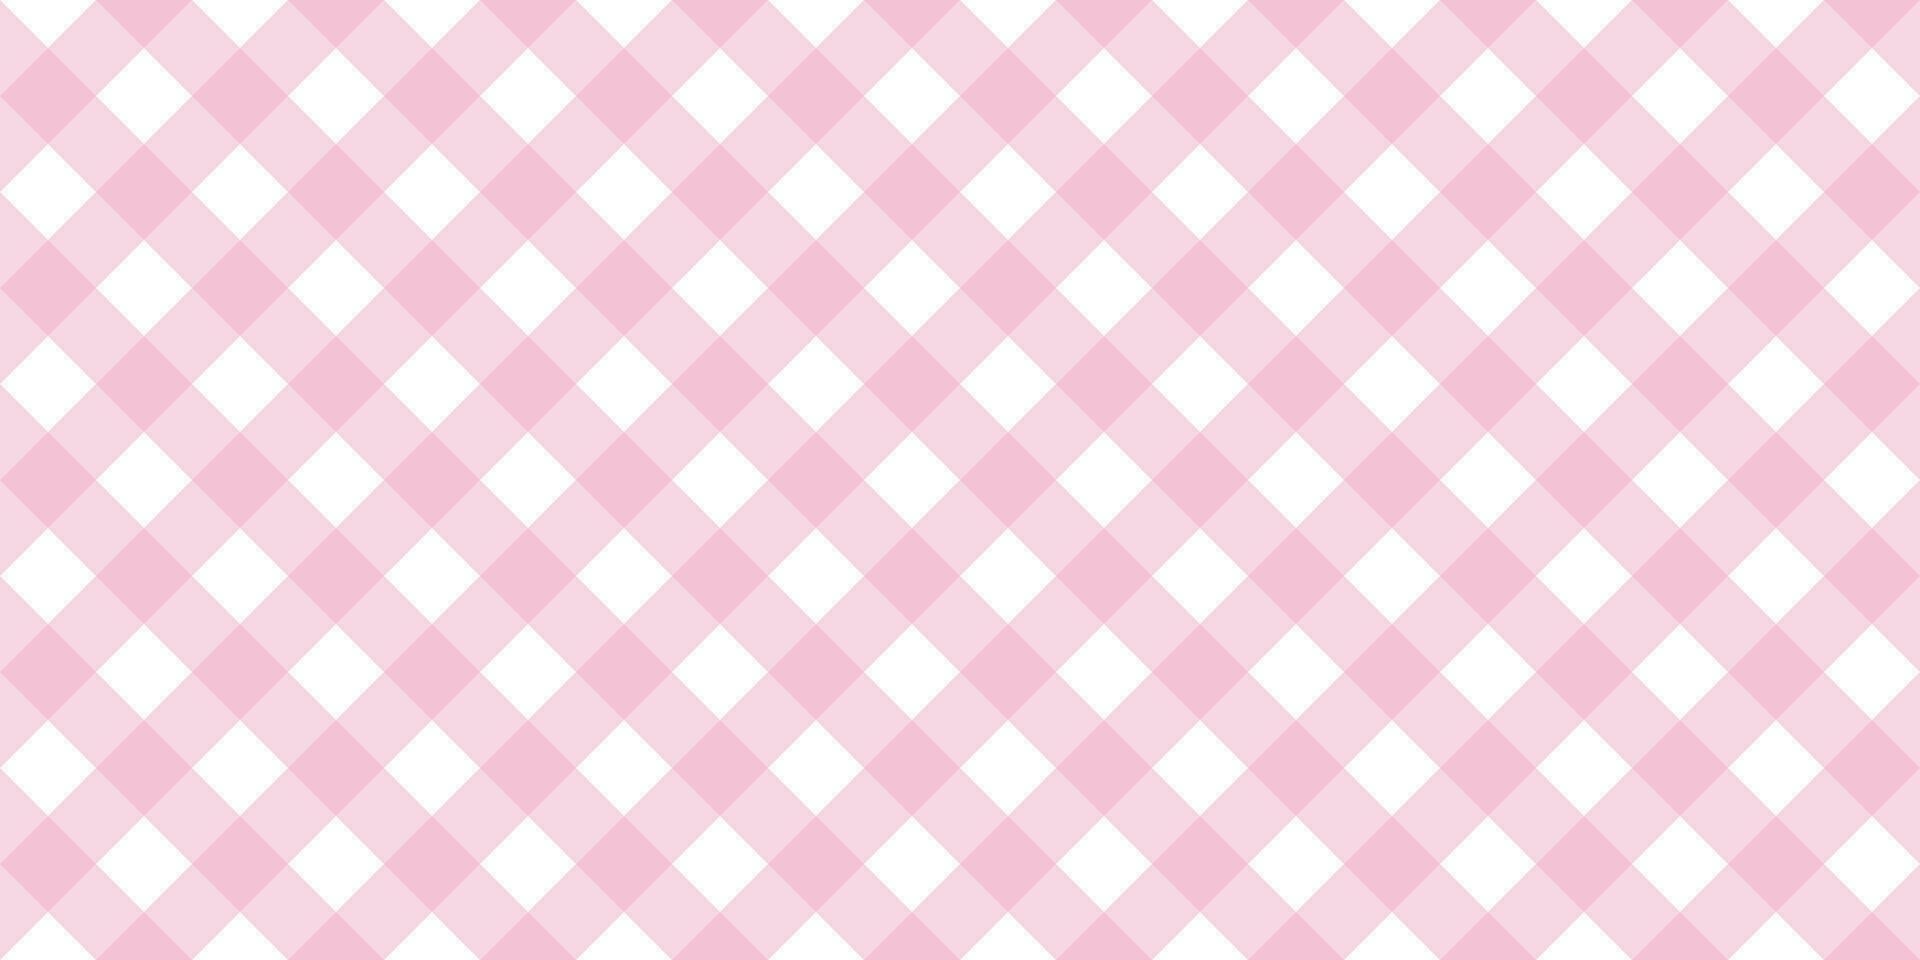 katoenen stof diagonaal naadloos patroon in roze pastel kleur. Vichy plaid ontwerp voor Pasen vakantie textiel decoratief. vector geruit patroon voor kleding stof - picknick deken, tafelkleed, jurk, servet.